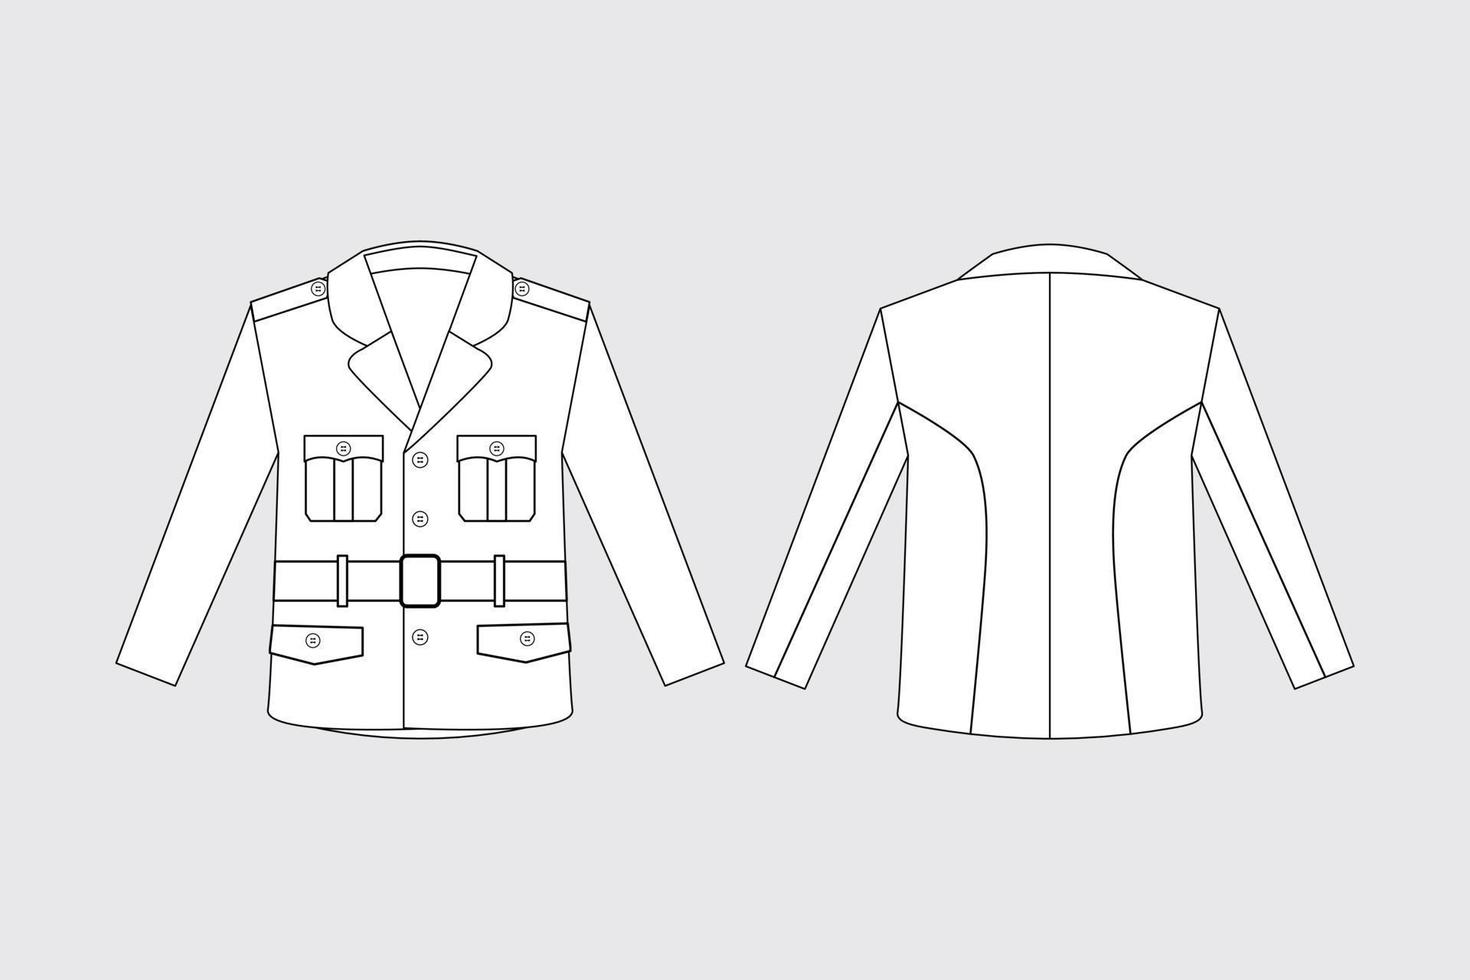 Indonesische paskibra-blazer voor heren past bij technische mode-illustratie vector